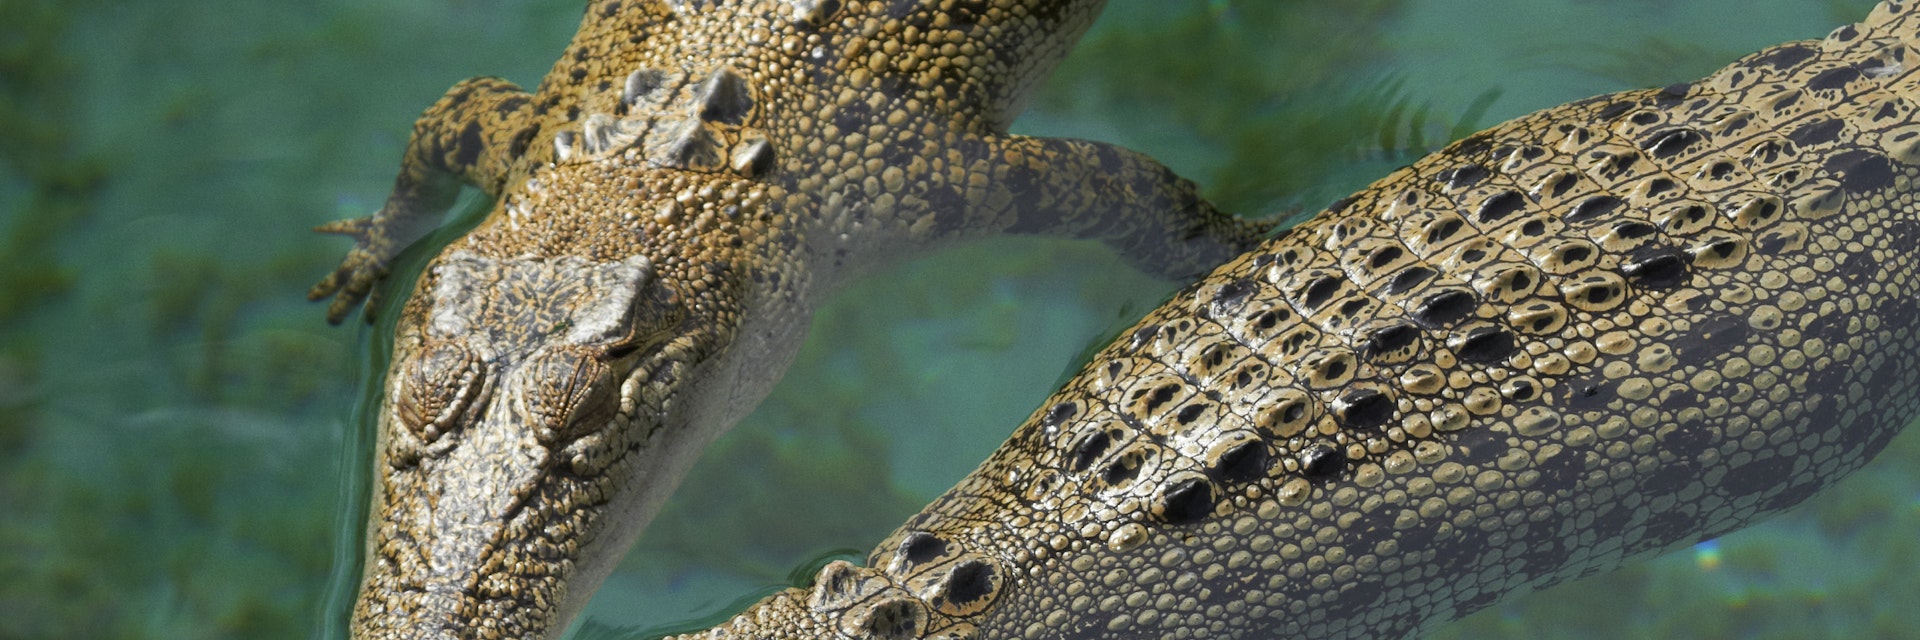 Saltwater crocodiles (Crocodylus porosus) lounging in pool at Crocosaurus Cove.